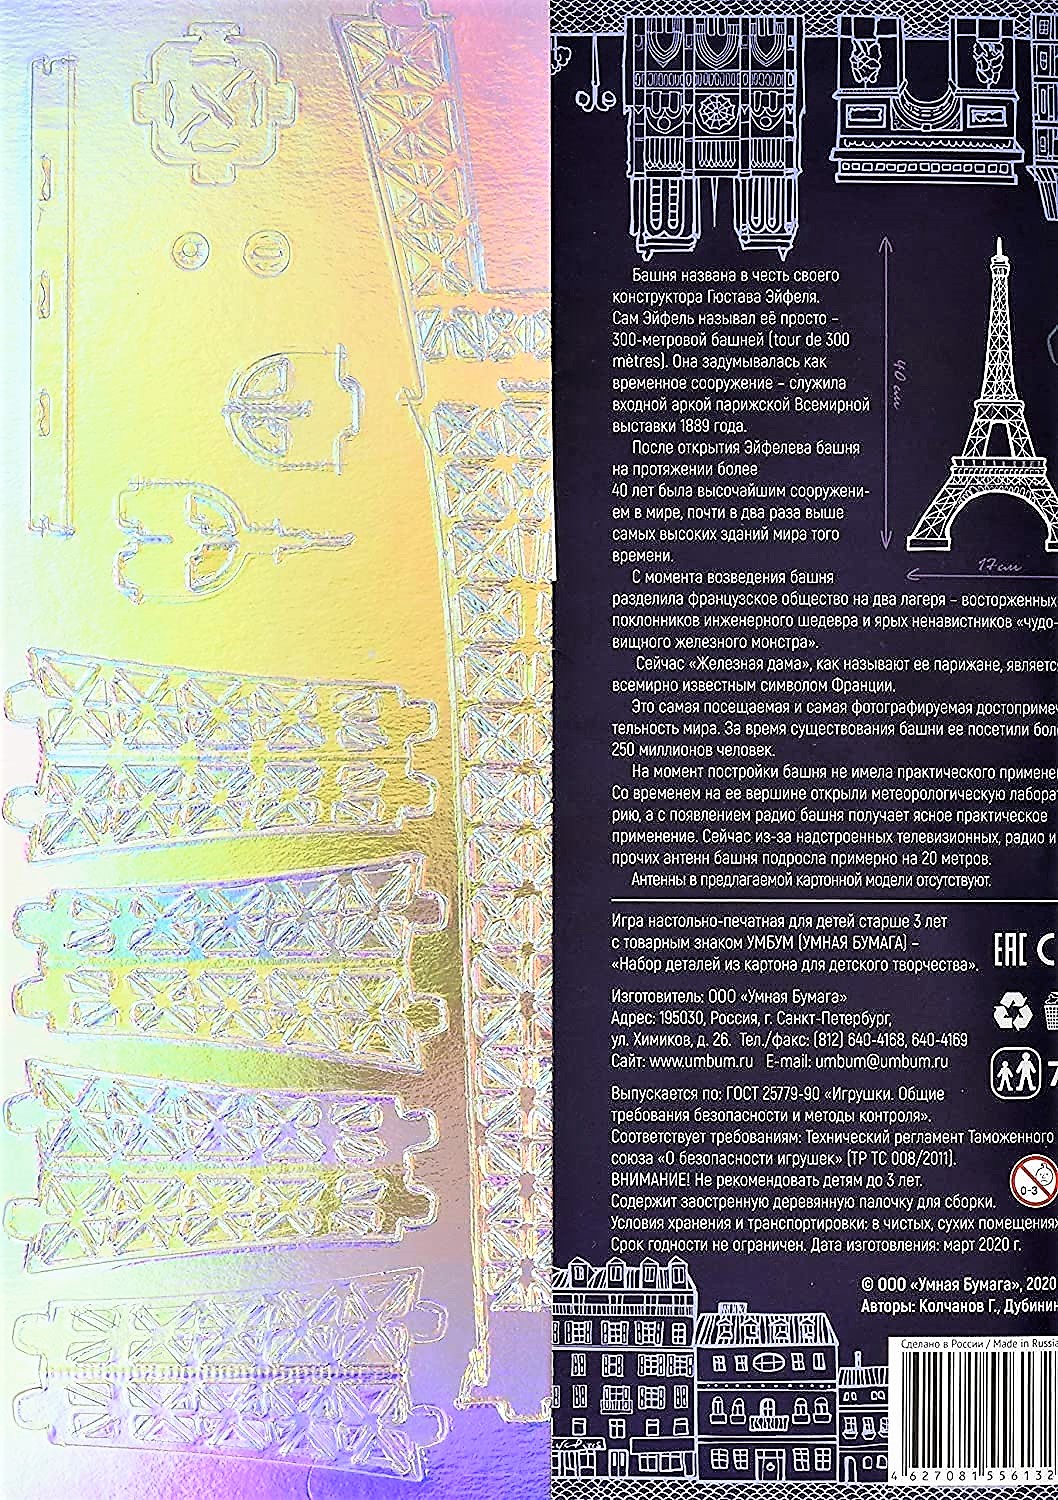 3D Puzzle KARTONMODELLBAU Papier Modell Geschenk Eiffelturm Paris